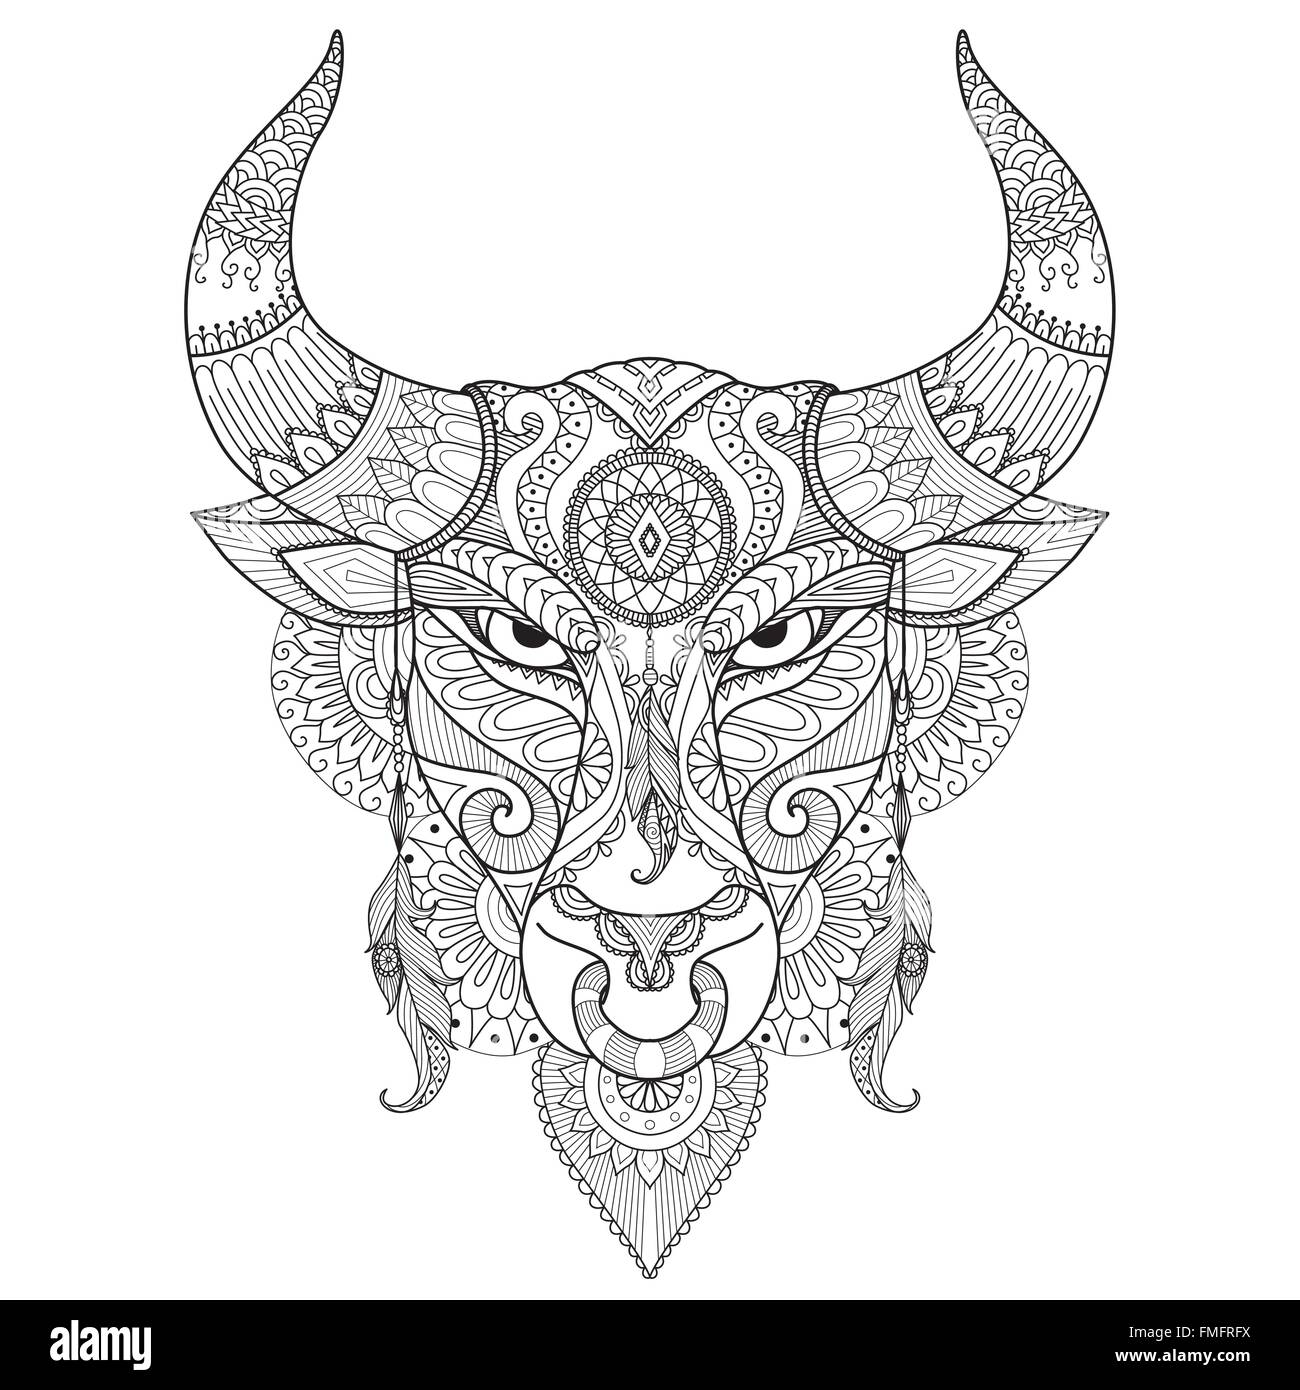 Angry Bull zum Färben von Buch, Tattoo, Logo, t-shirt-Design und andere Dekoration zeichnen Stock Vektor